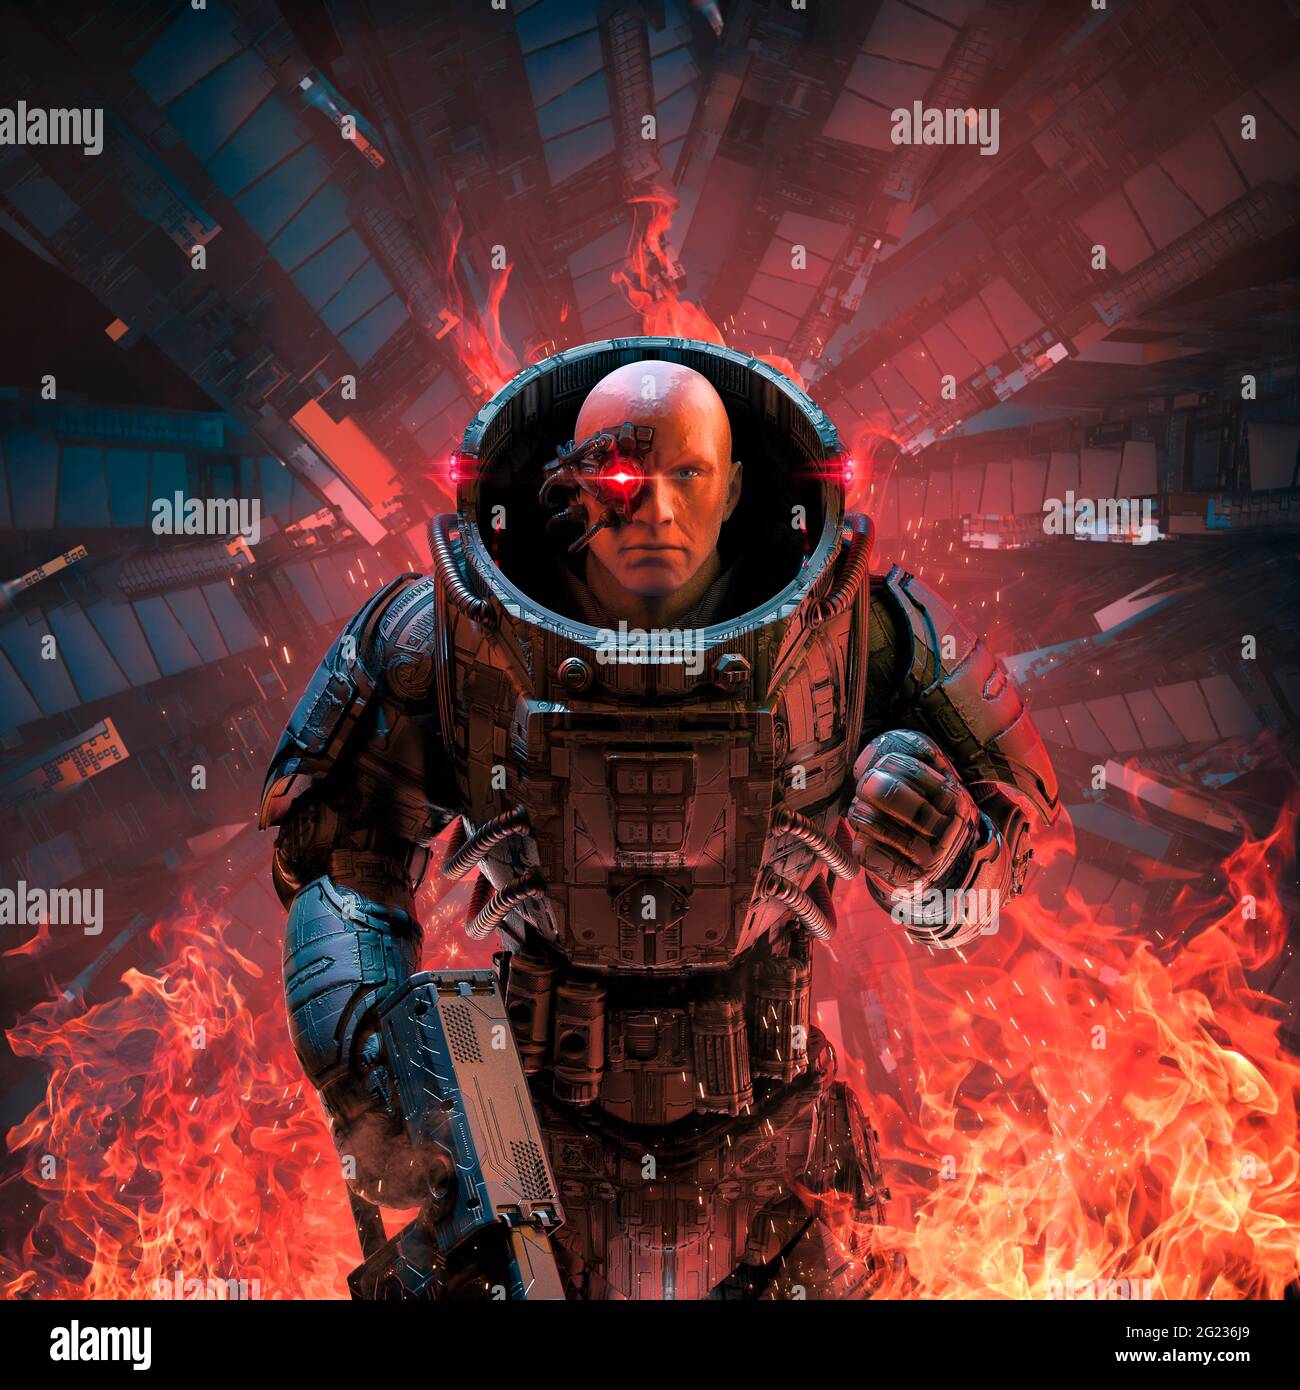 Cyberpunk Soldier Inferno / 3D-Illustration des Science-Fiction-Militärroboter-Kriegers, der inmitten von Flammen im brennenden Raumschiff steht Stockfoto